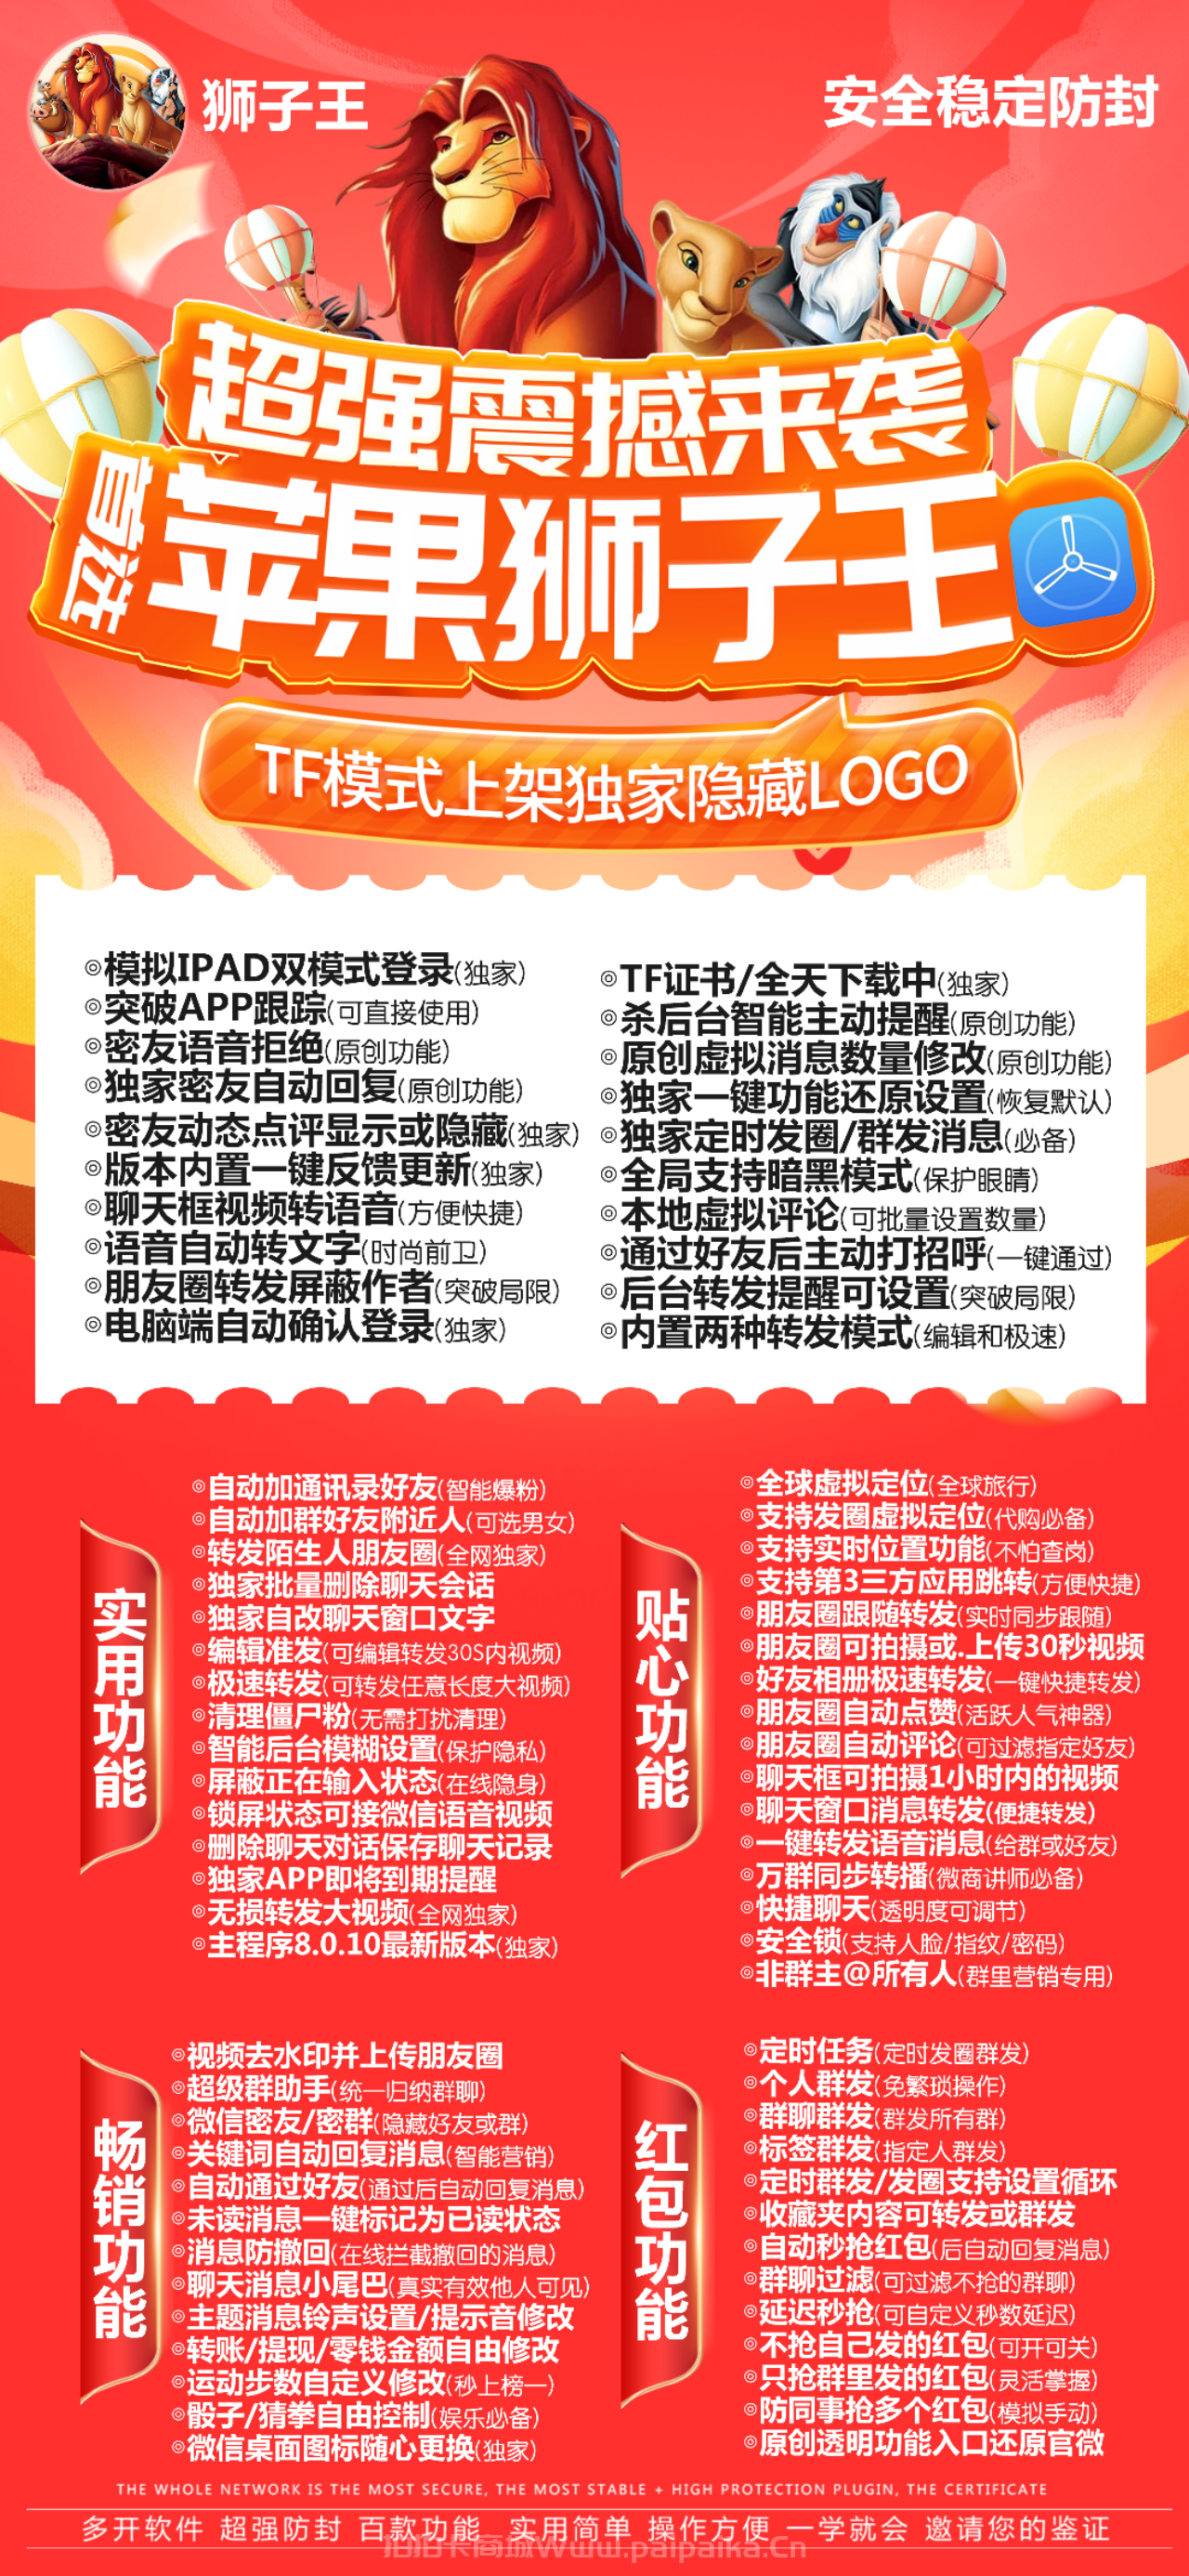 苹果狮子王官方网站-激活码-TF狮子王